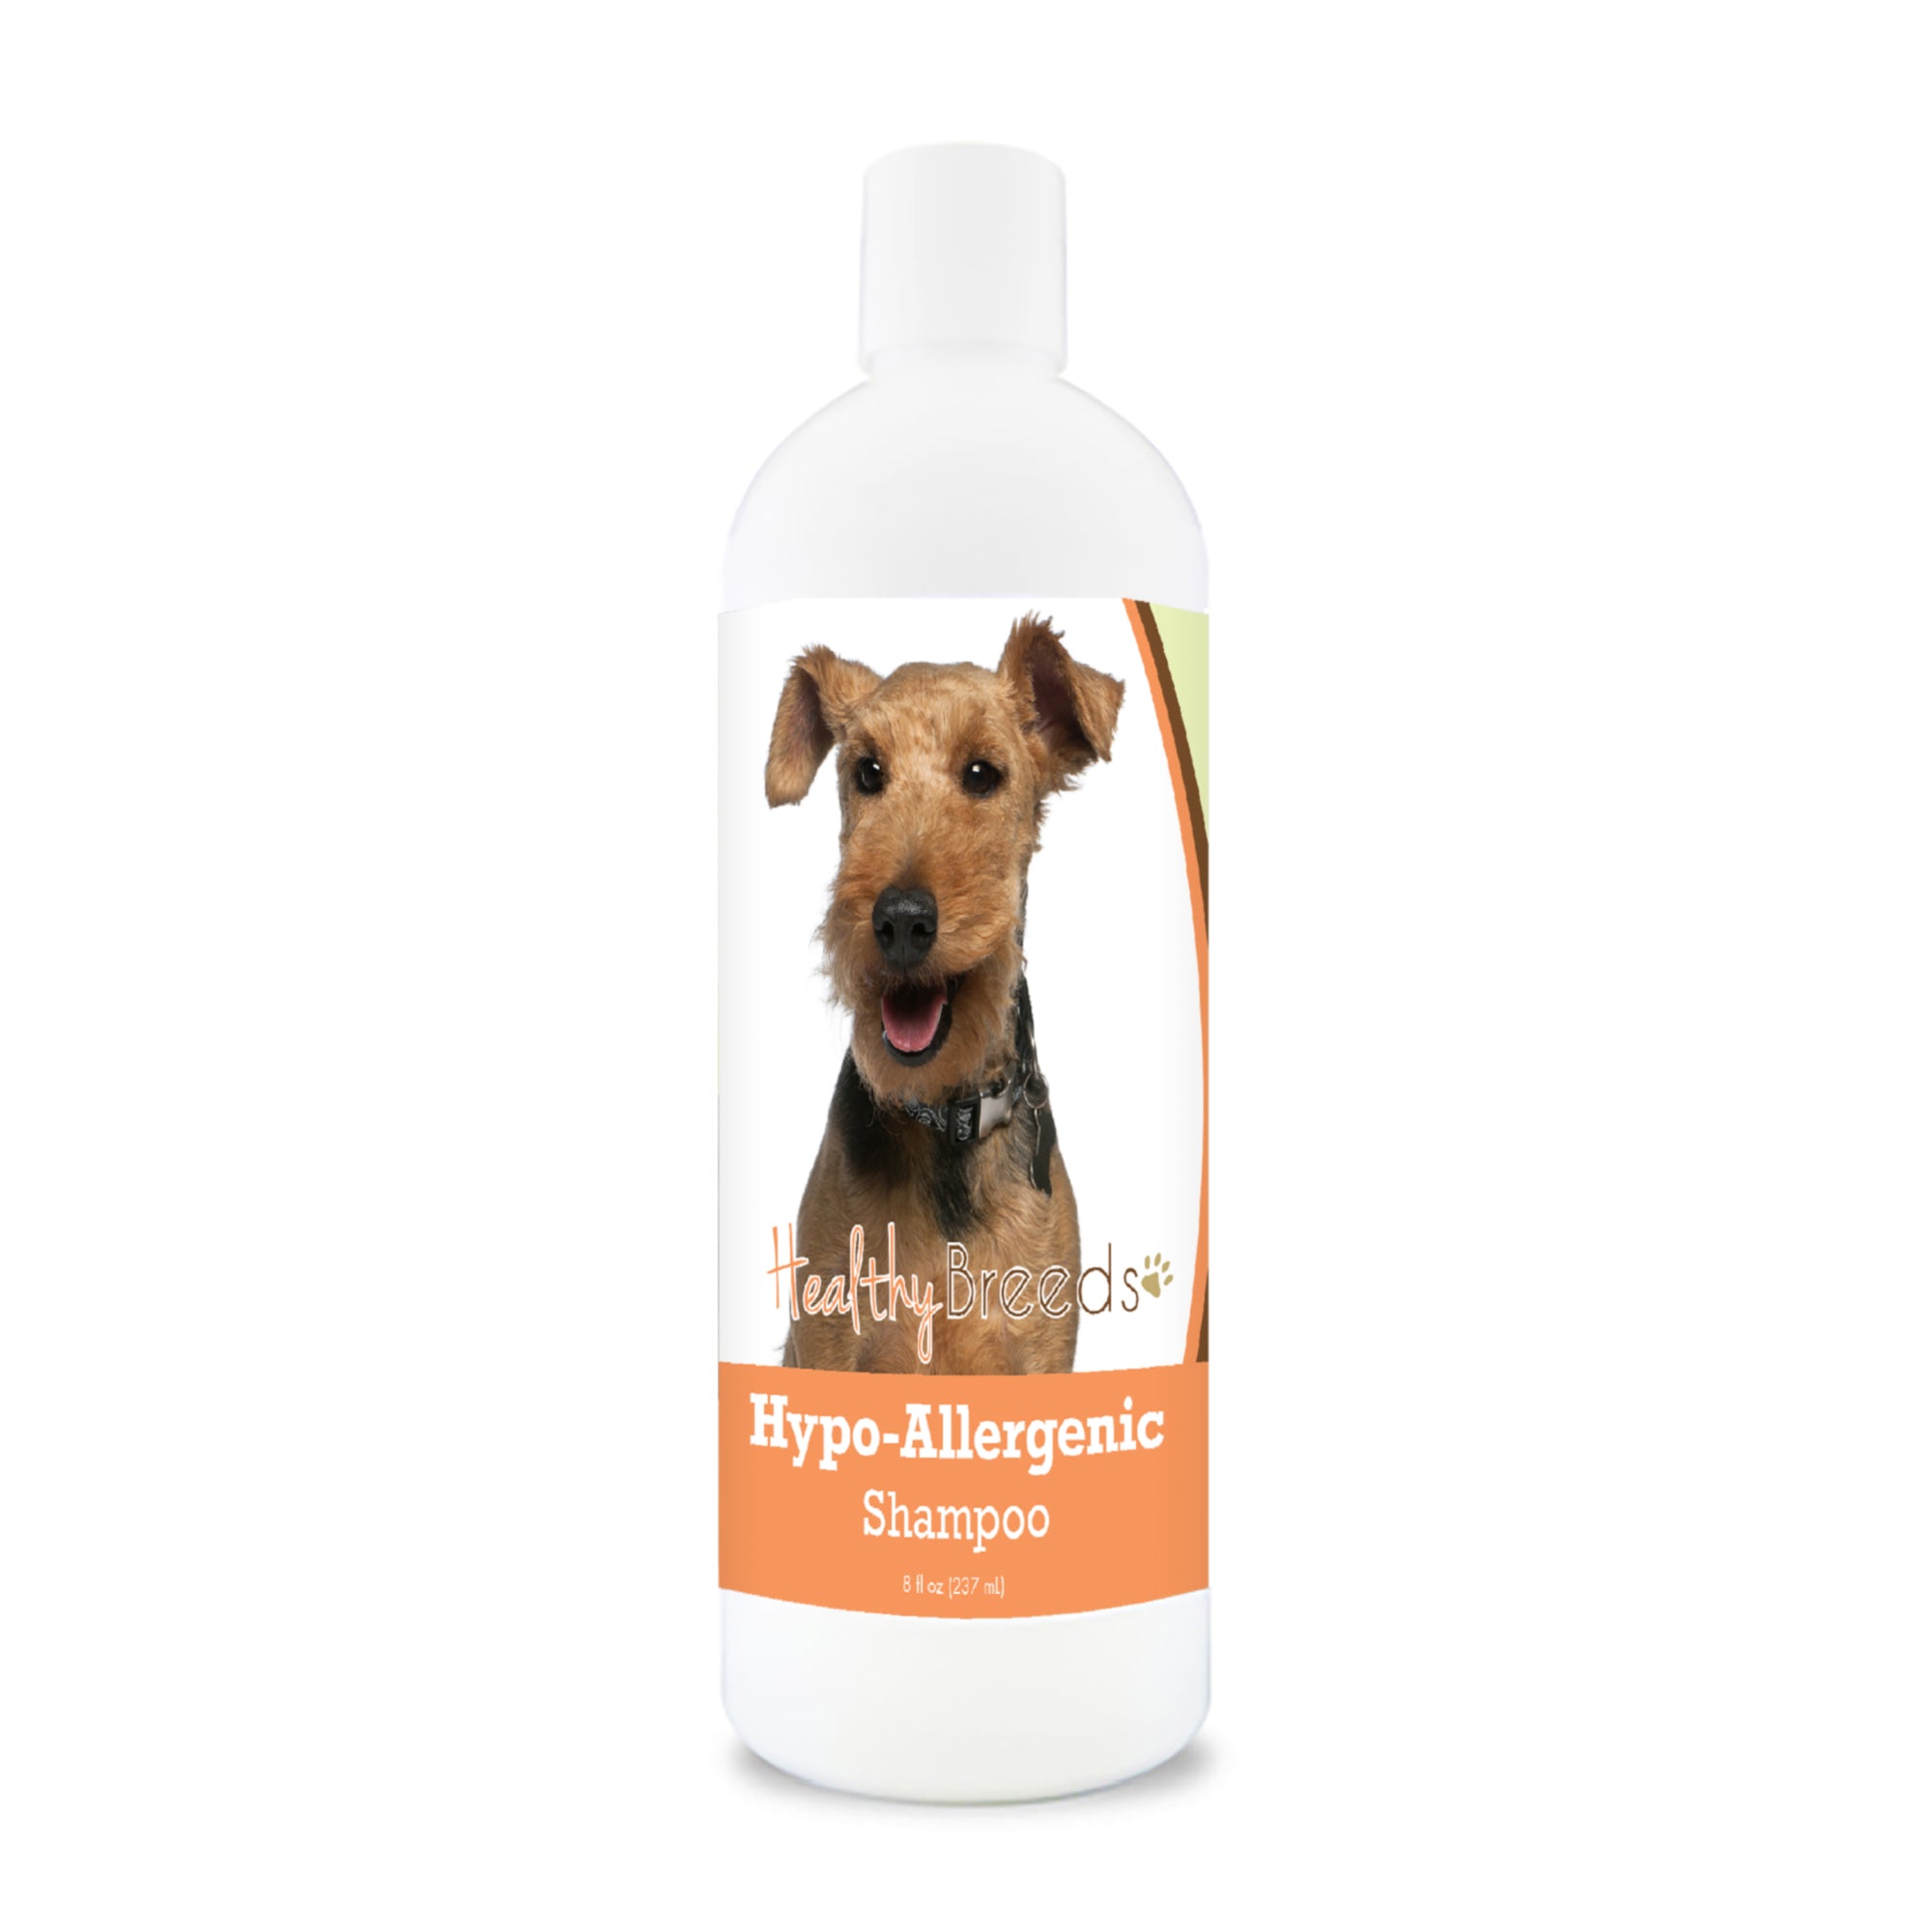 Welsh Terrier Hypo-Allergenic Shampoo 8 oz